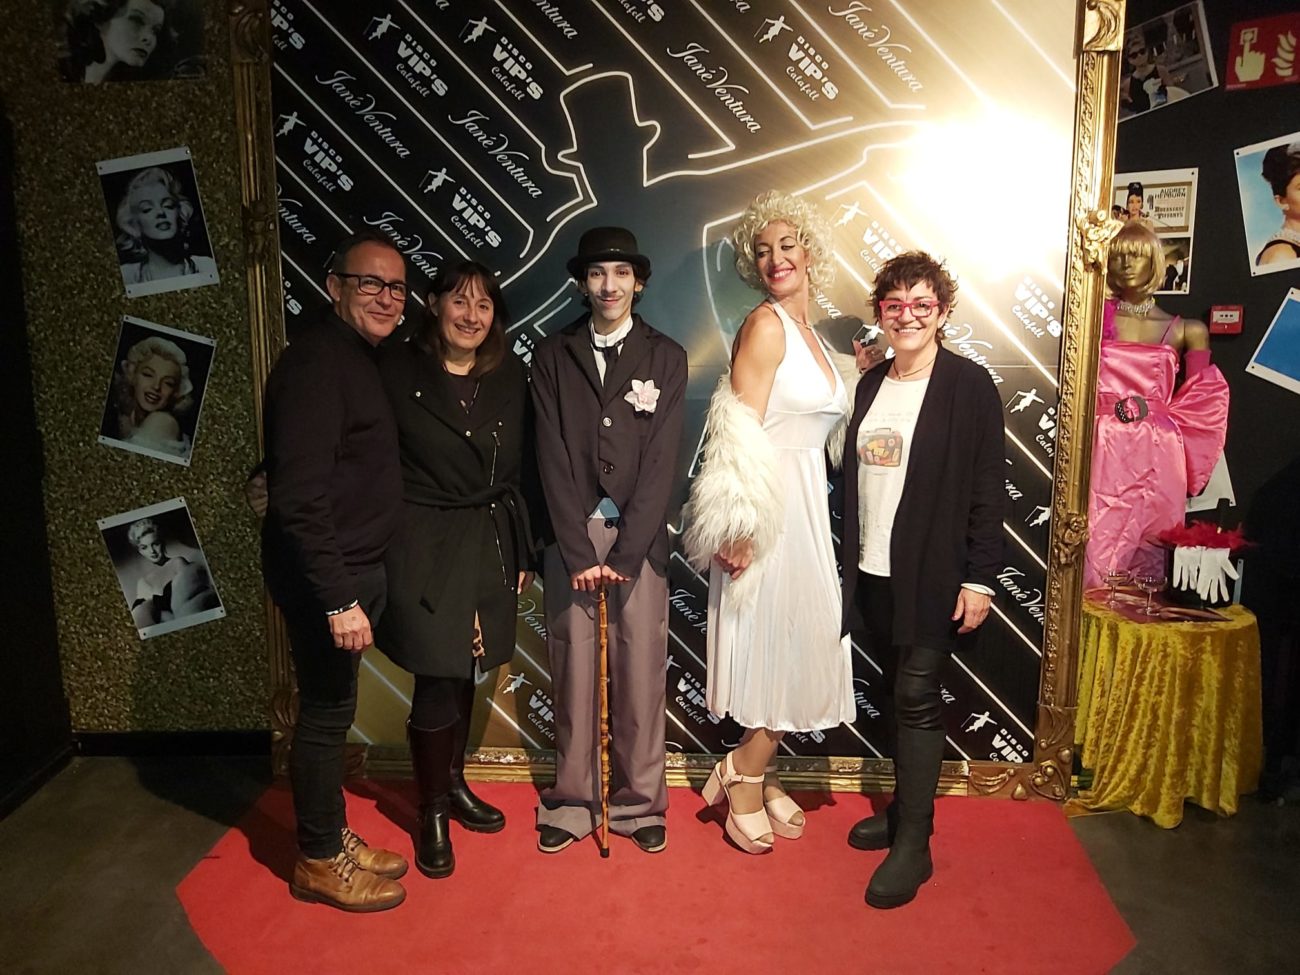 La regidora de Promoció de la Ciutat, Lluïsa Lastra, amb els personatges de la Festa del Cinema i els responsables de la Discoteca Vip's Calafell